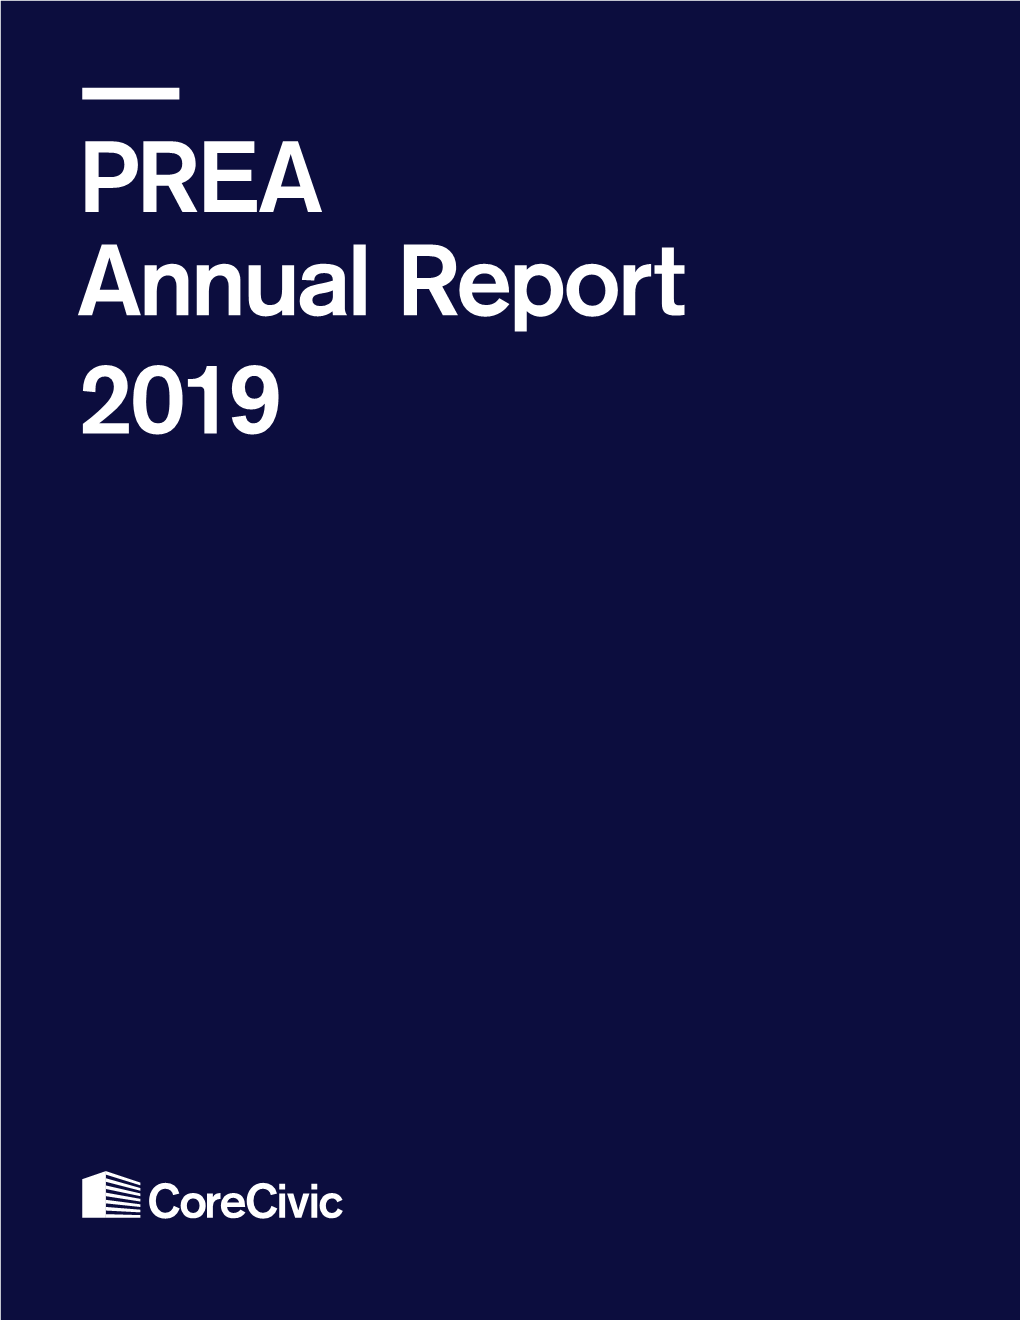 PREA Annual Report 2019